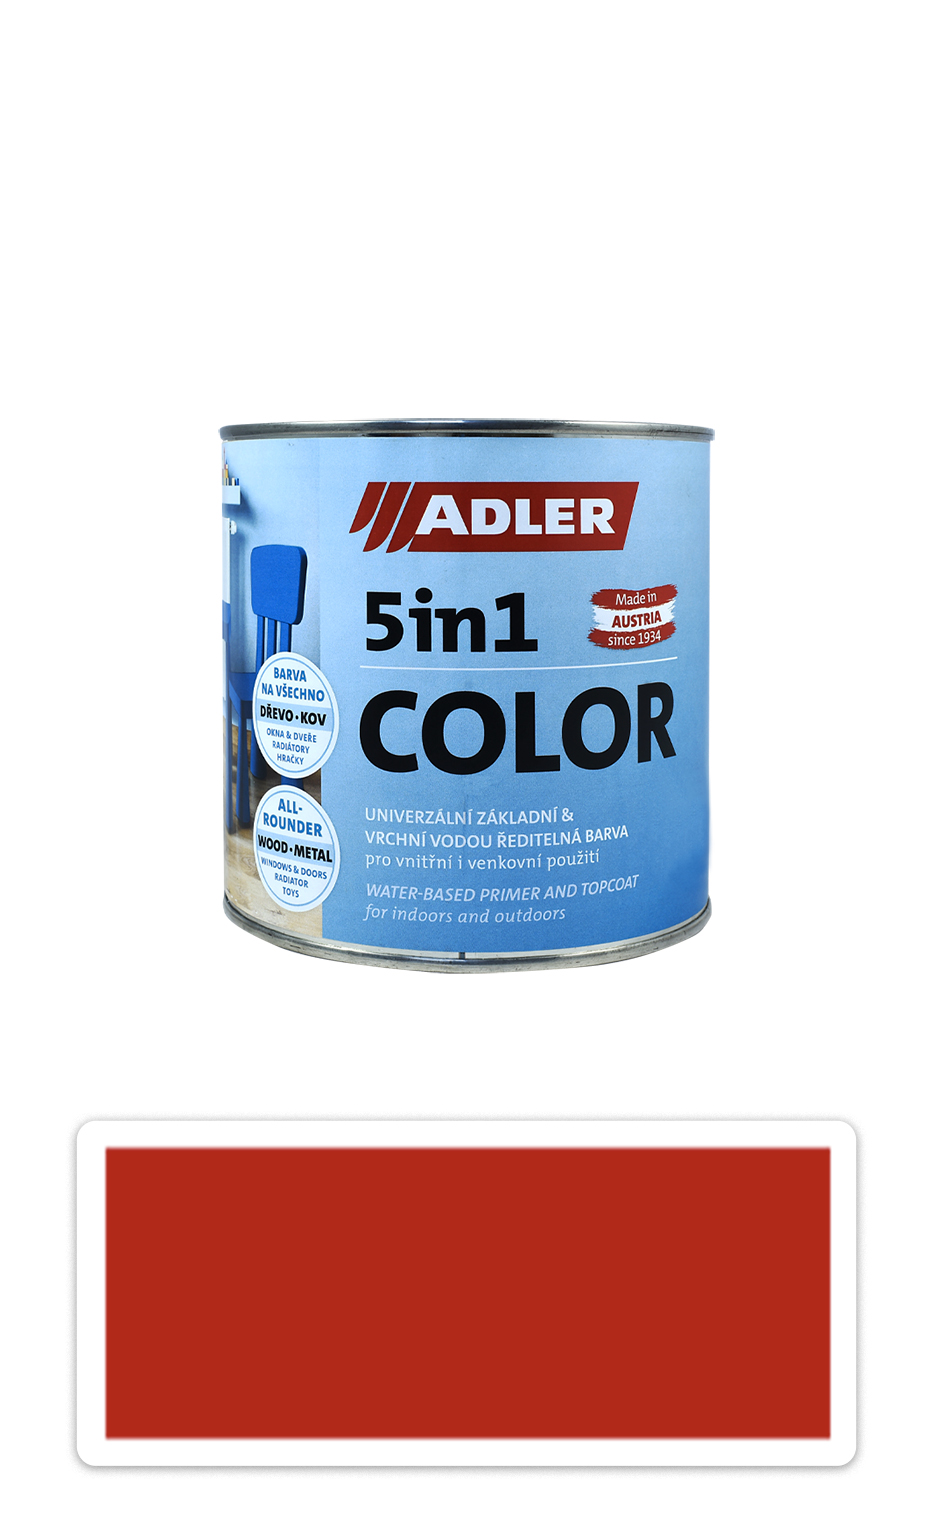 ADLER 5in1 Color - univerzální vodou ředitelná barva 0.75 l Feuerrot / Ohnivě červená RAL 3000